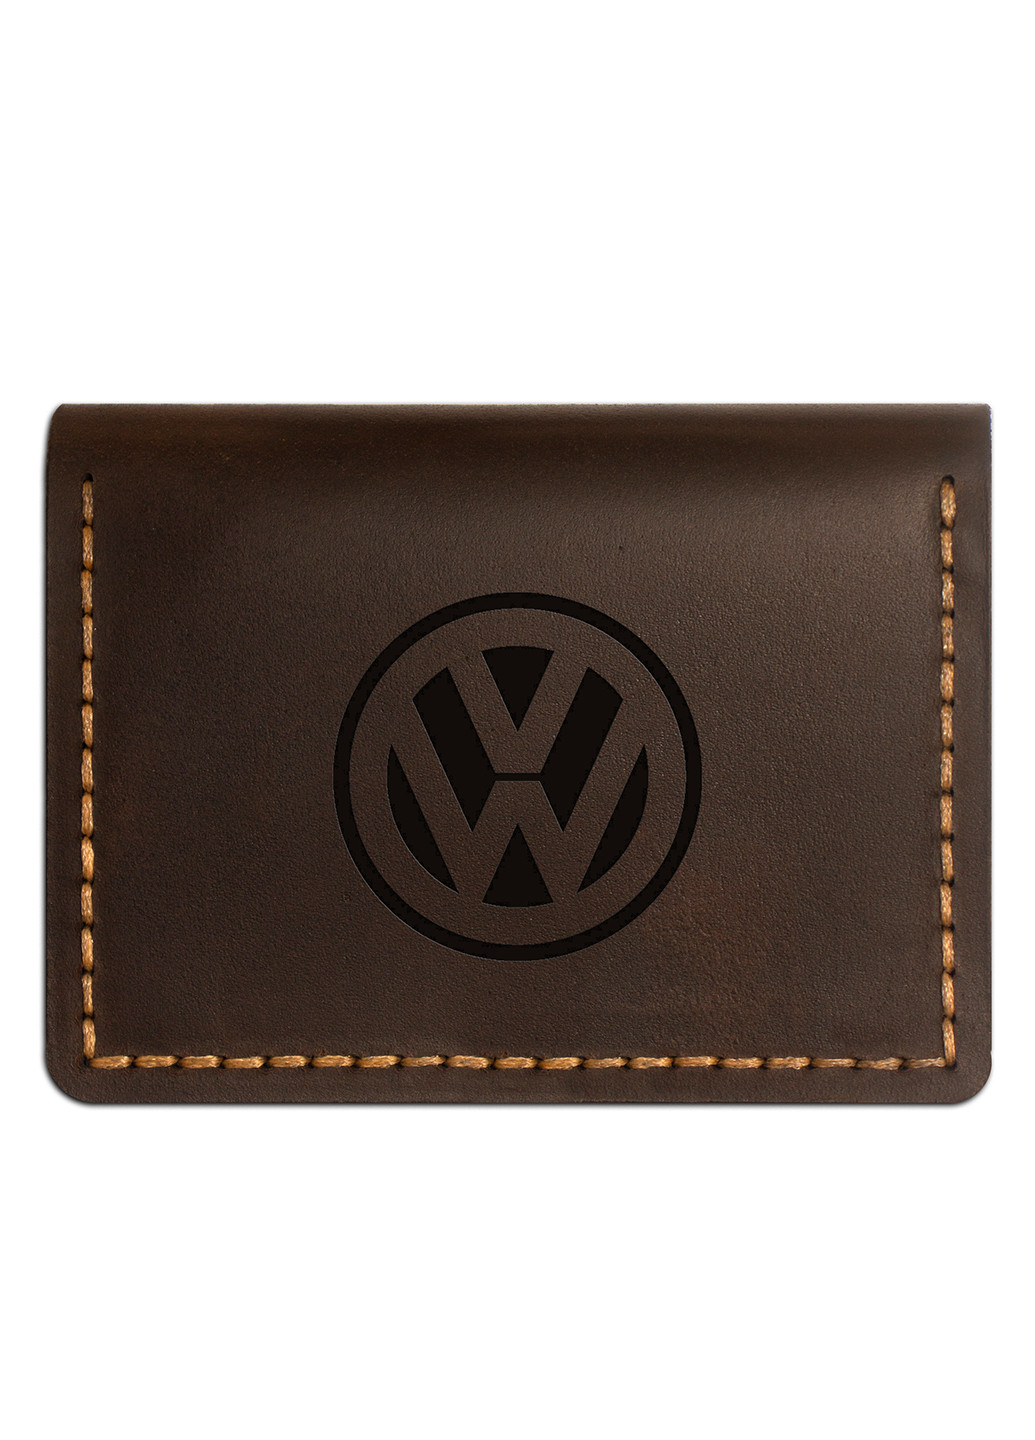 Портмоне - Обкладинка для документів Volkswagen (4 віконця для прав, ID паспорта, пропуска) - Коричневий (nas150402-9) Anchor Stuff e-cover (252289990)